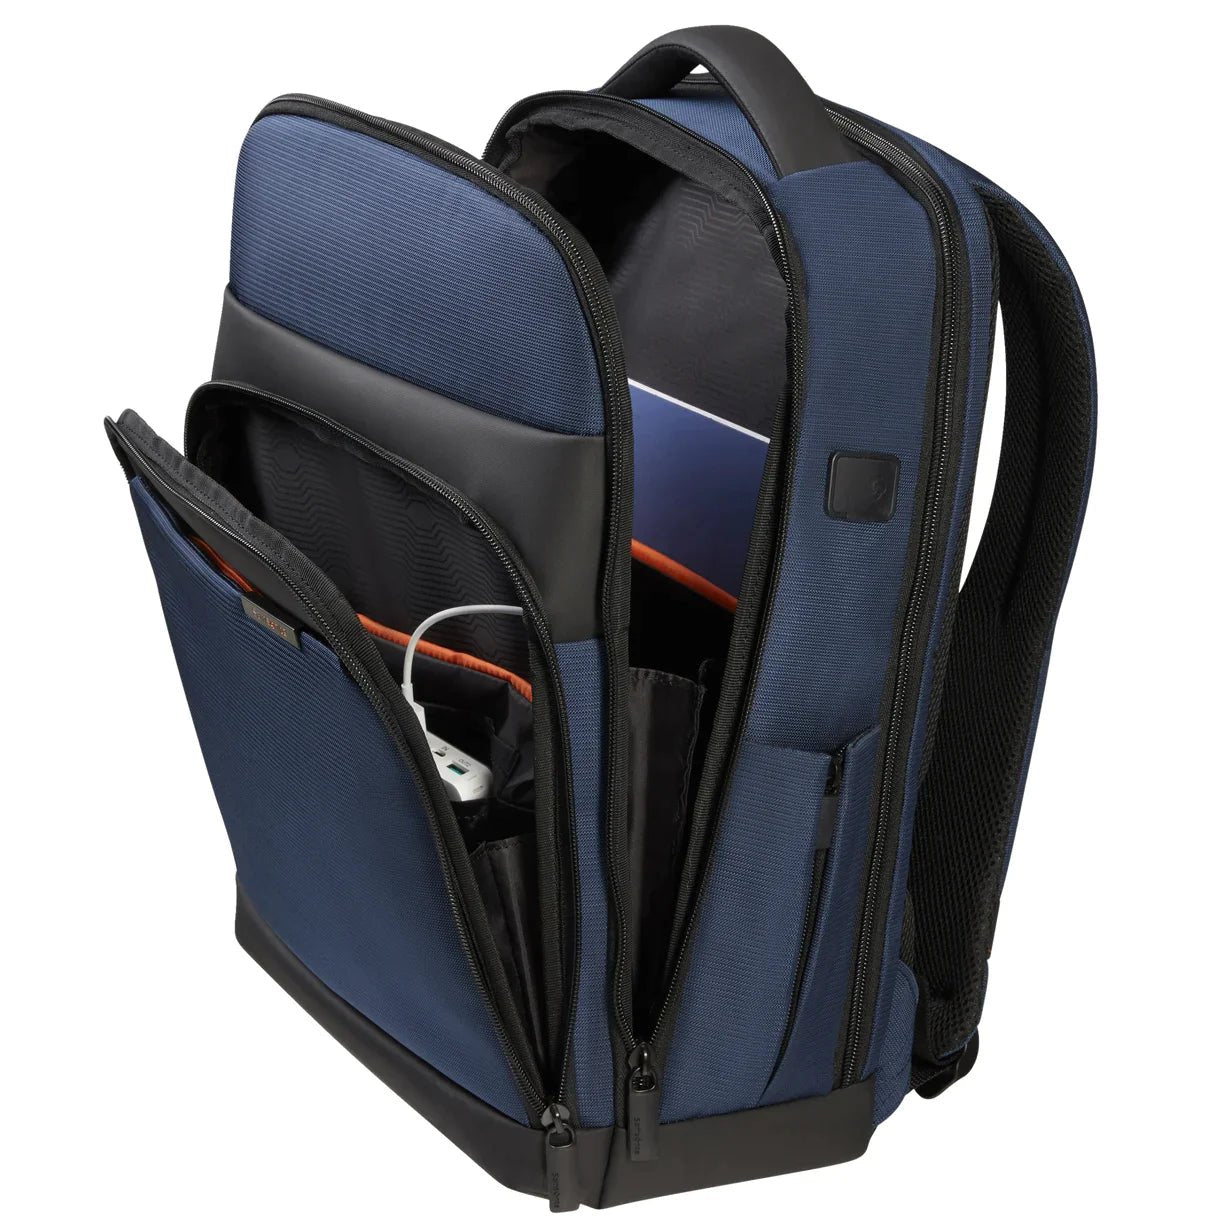 Samsonite Mysight Laptop Backpack 43 cm - Blue